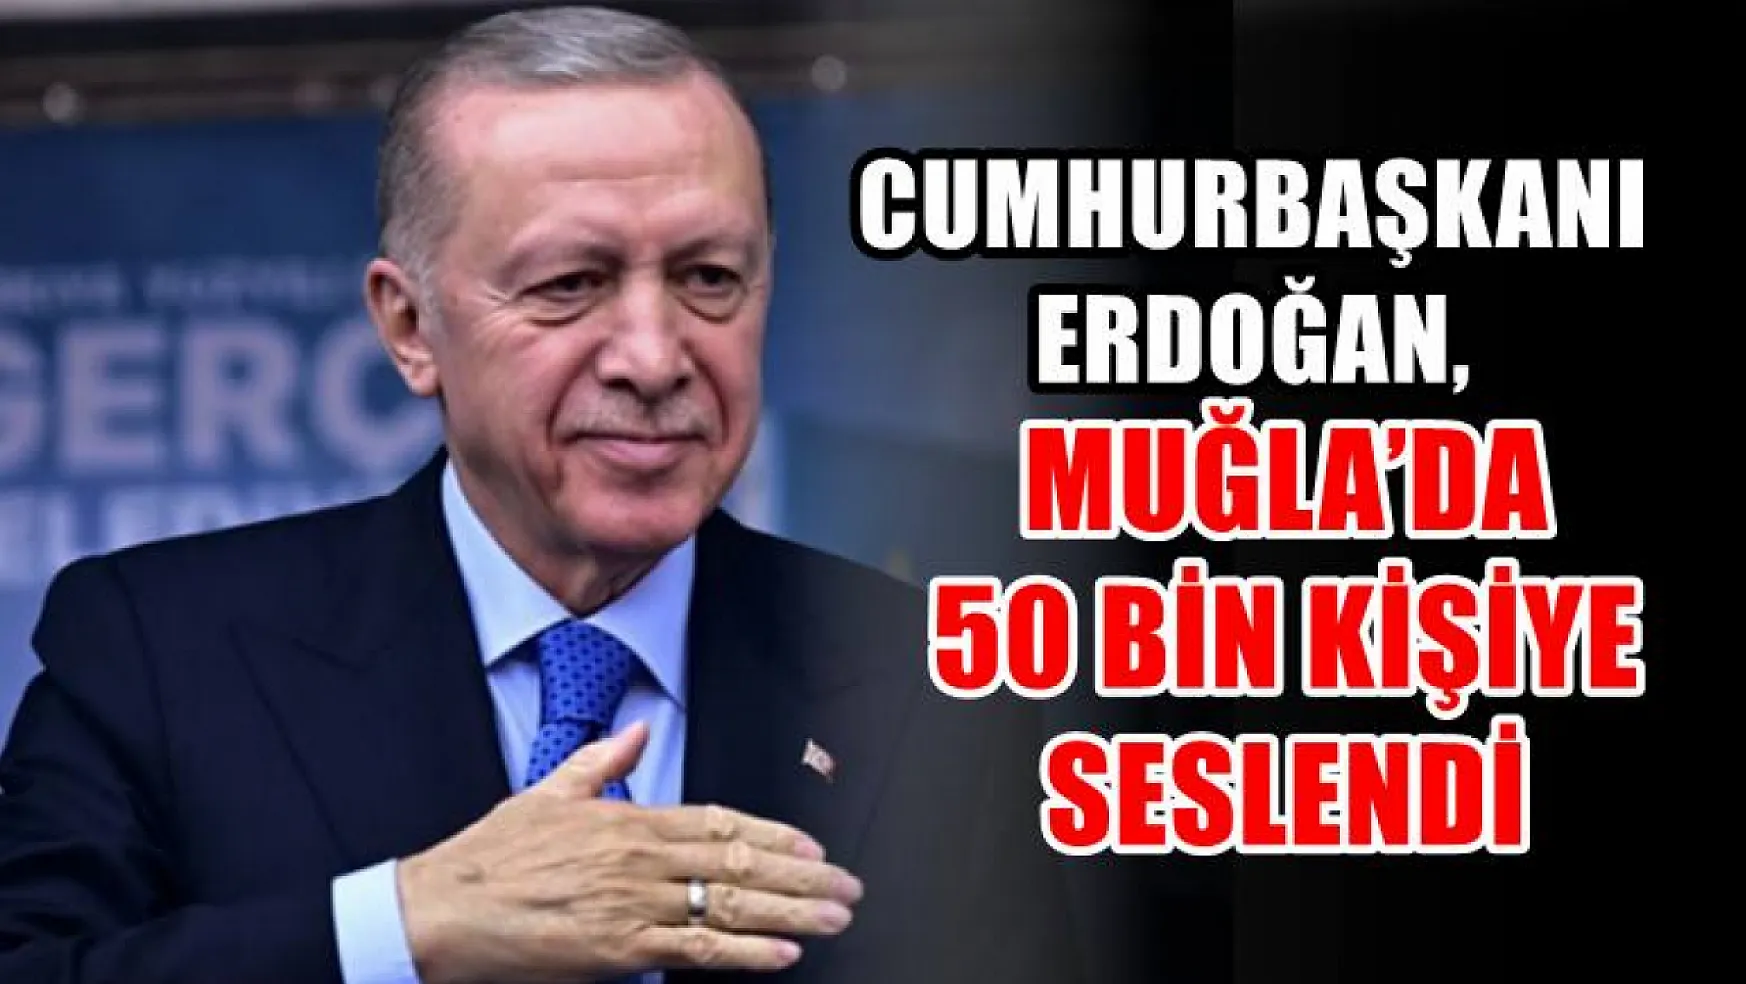 Cumhurbaşkanı Erdoğan, Muğla'da 50 Bin Kişiye Seslendi